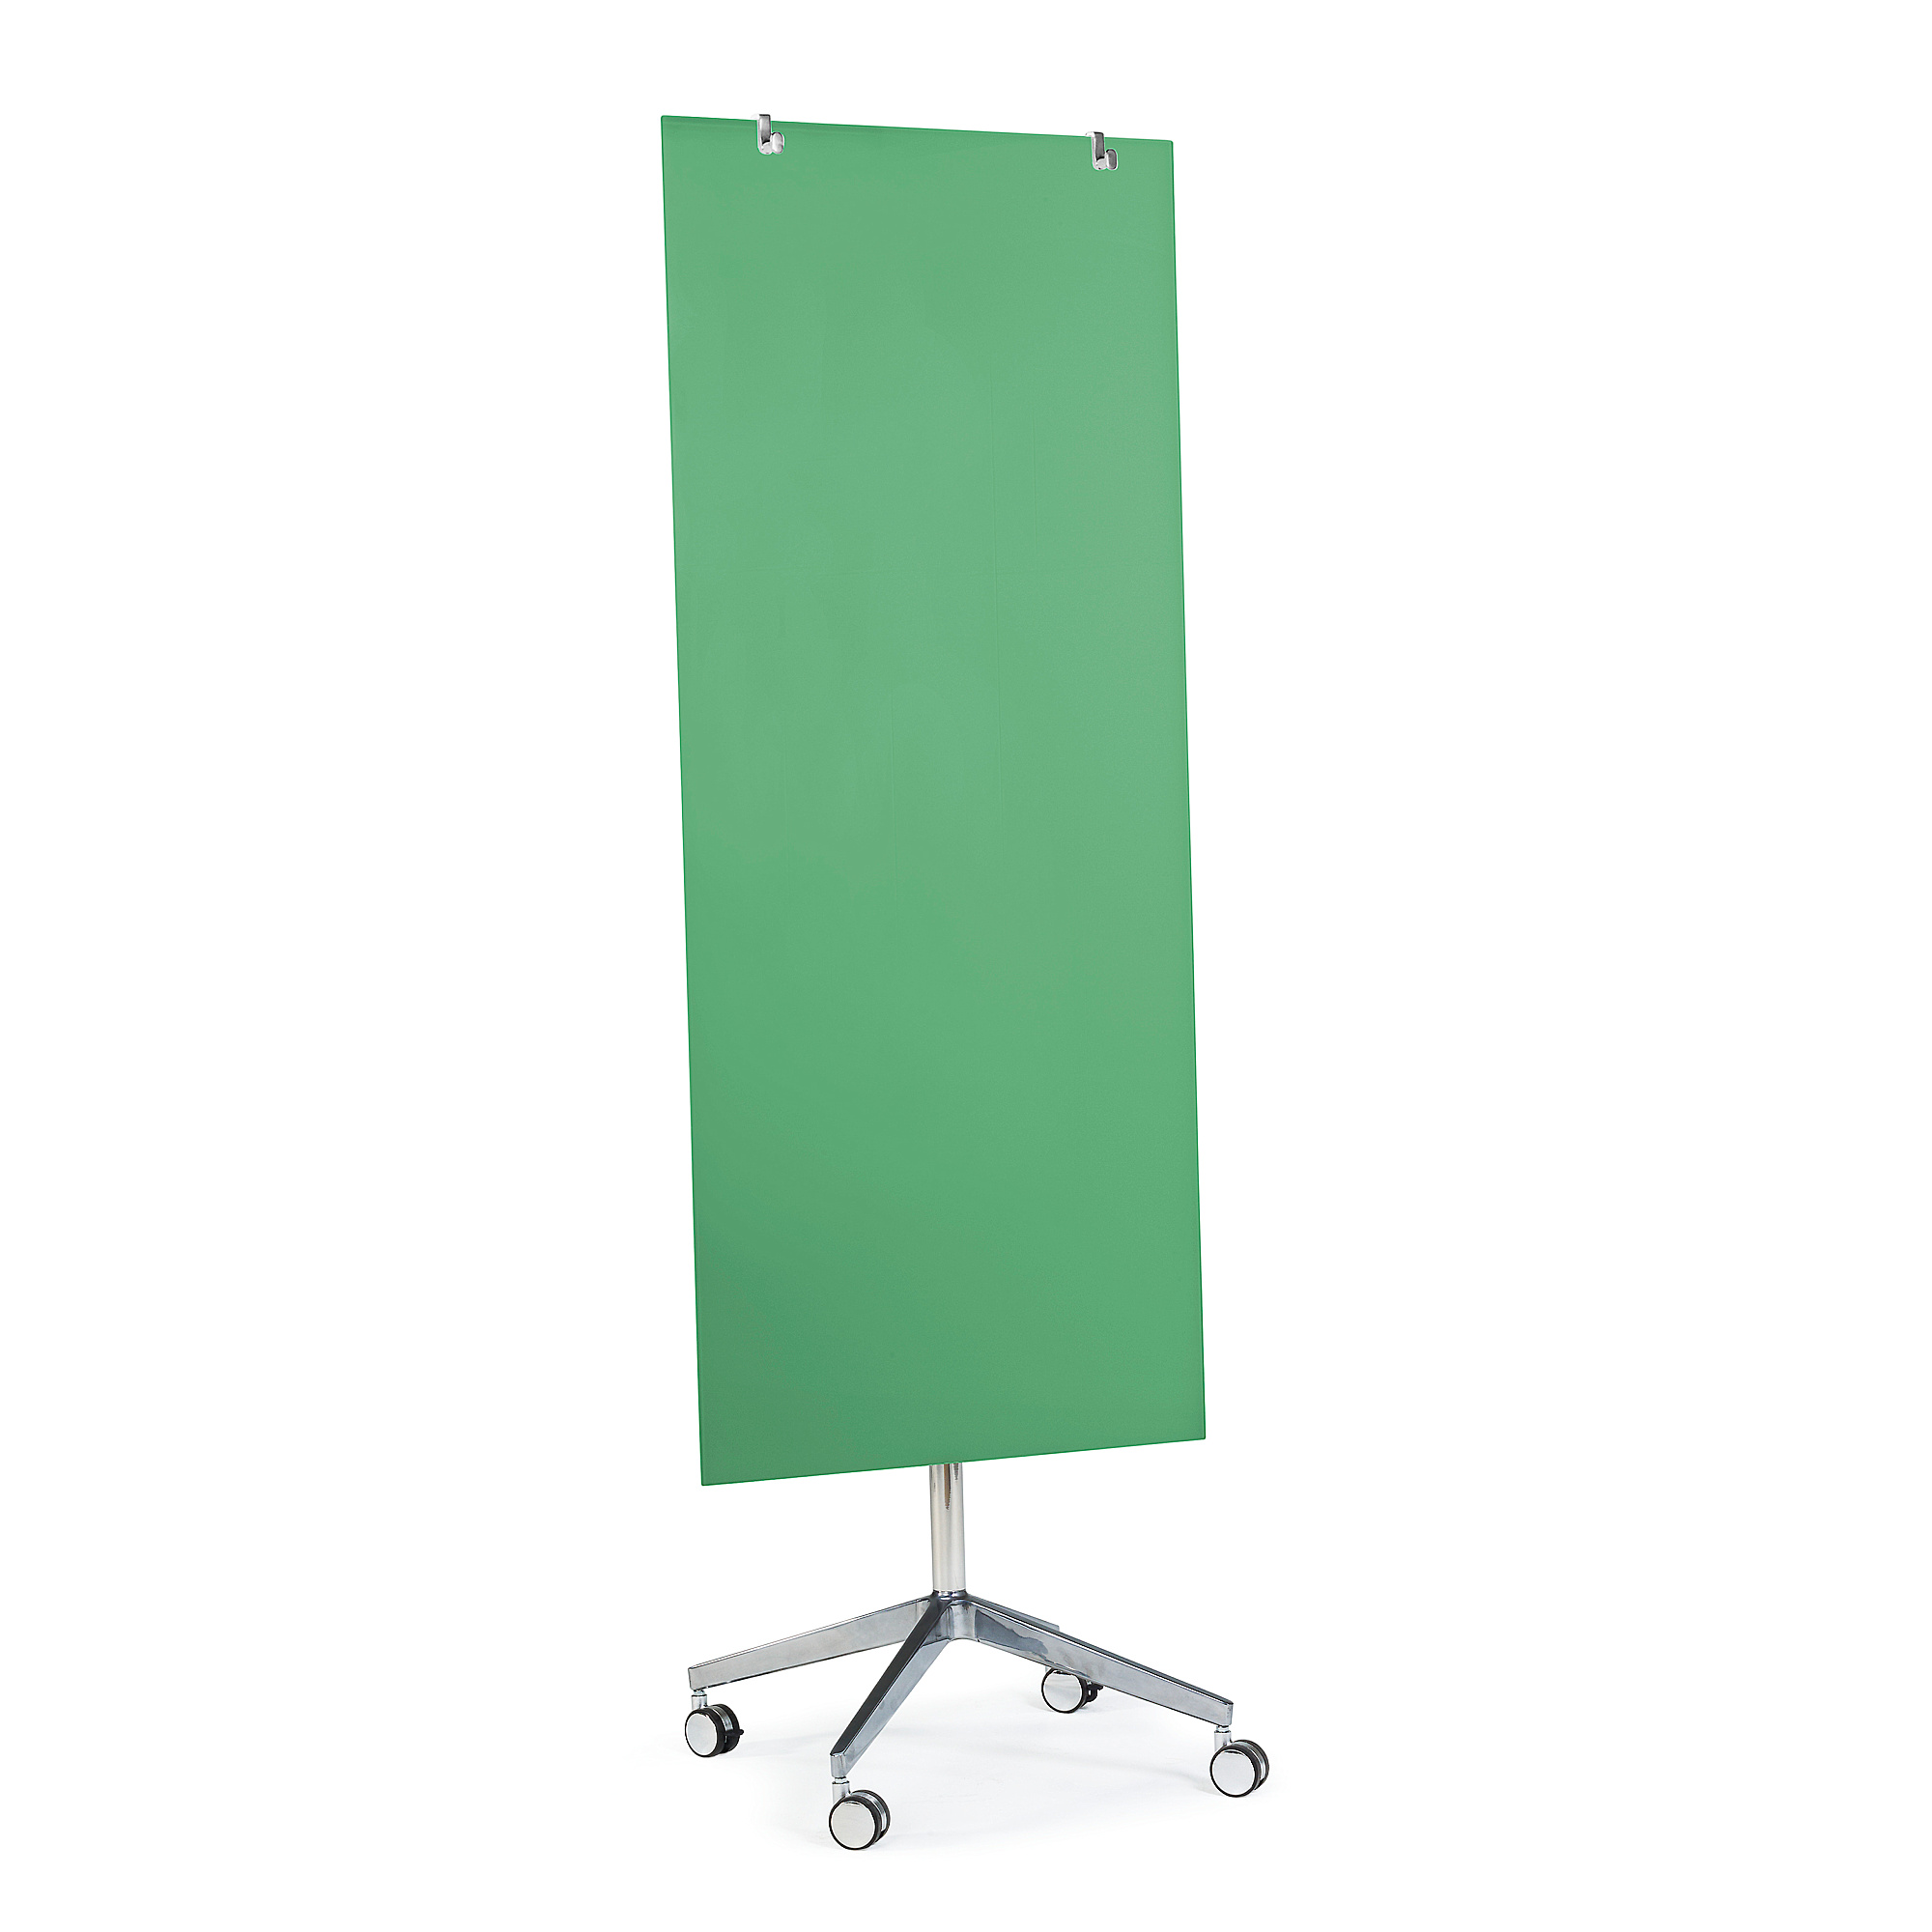 Mobilní skleněná tabule STELLA, magnetická, zelená